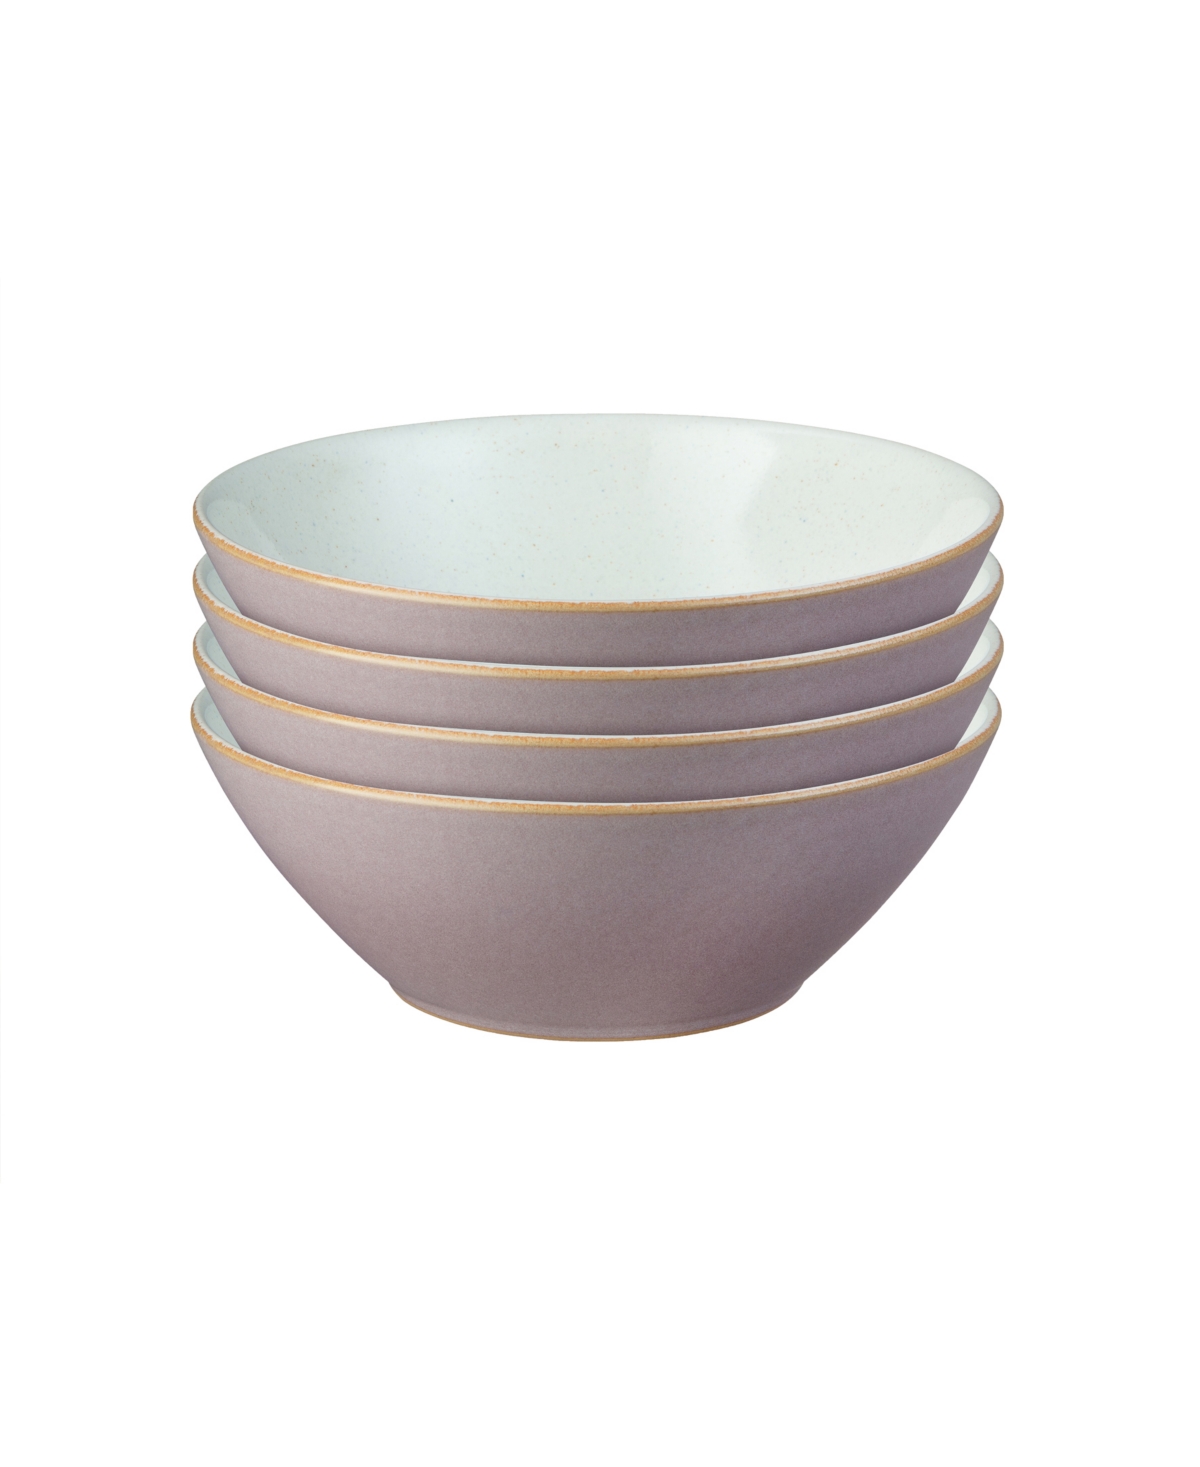 Impression Cereal Bowl Set of 4 - Med Pink